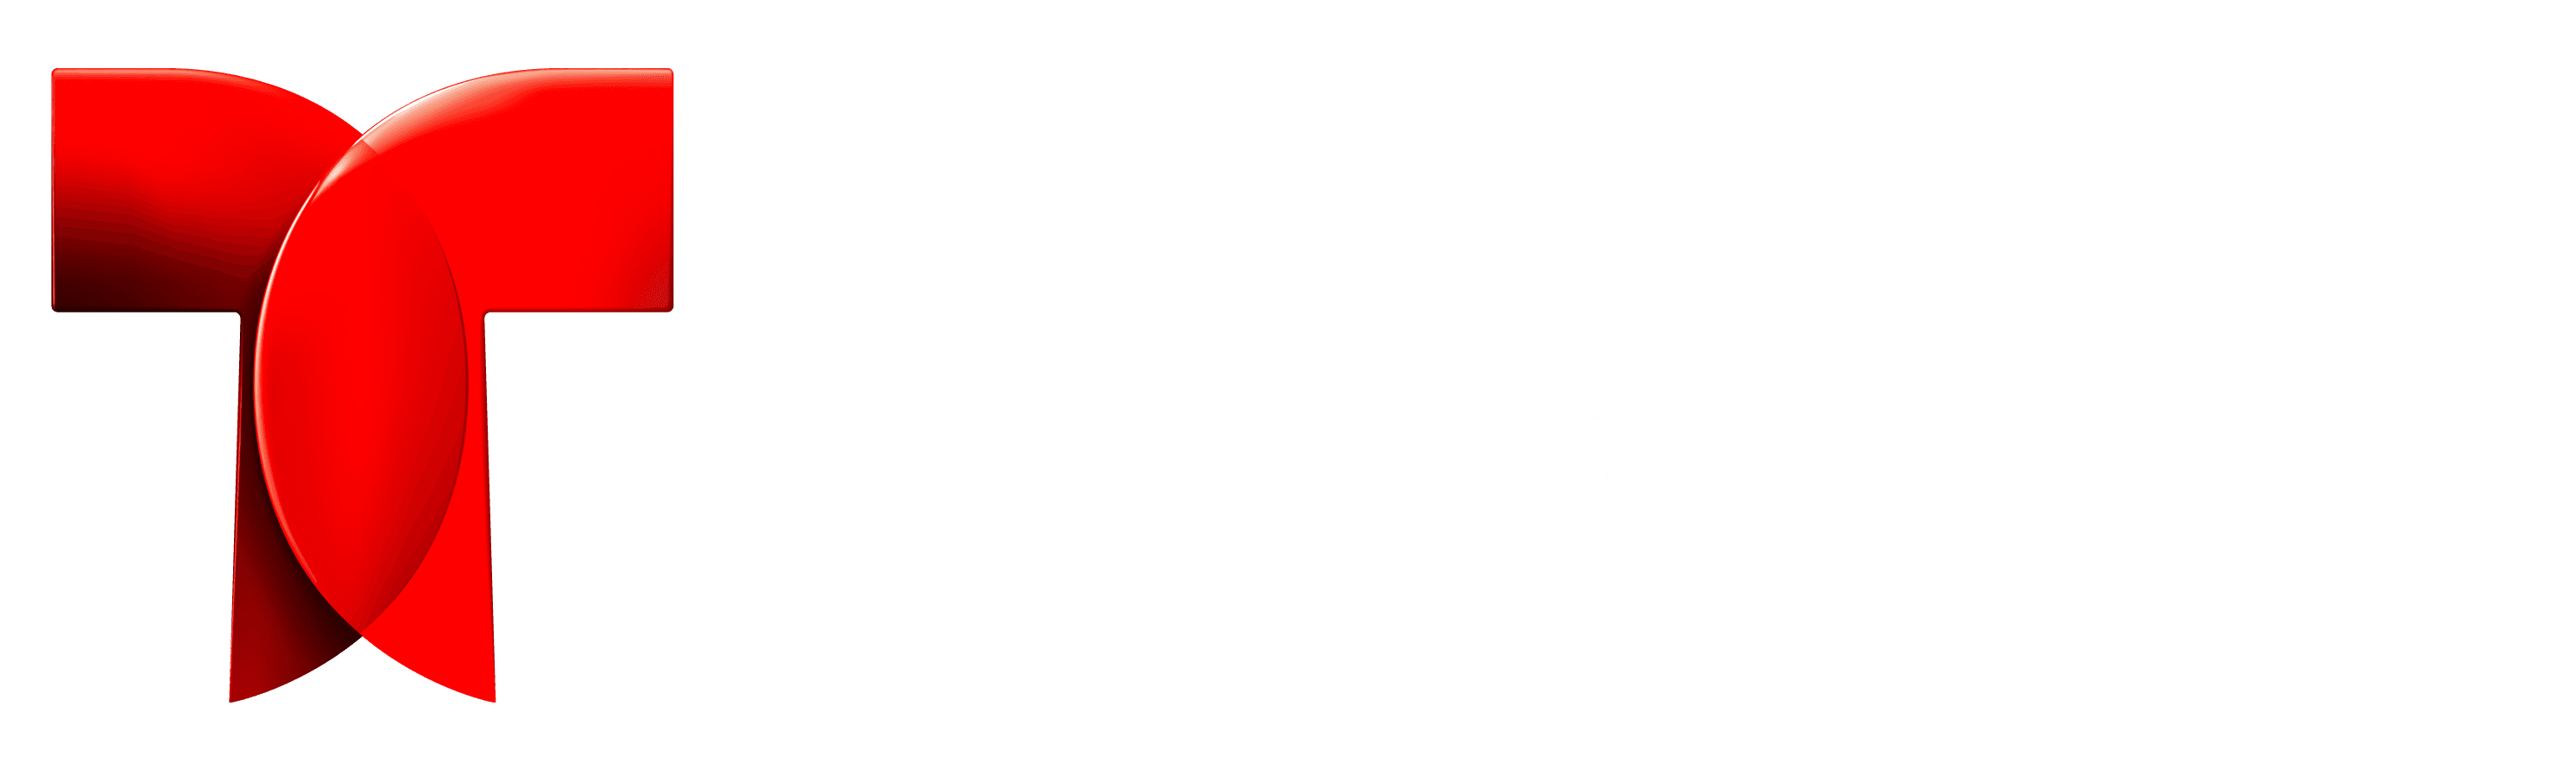 Telemundo-white-logo.png